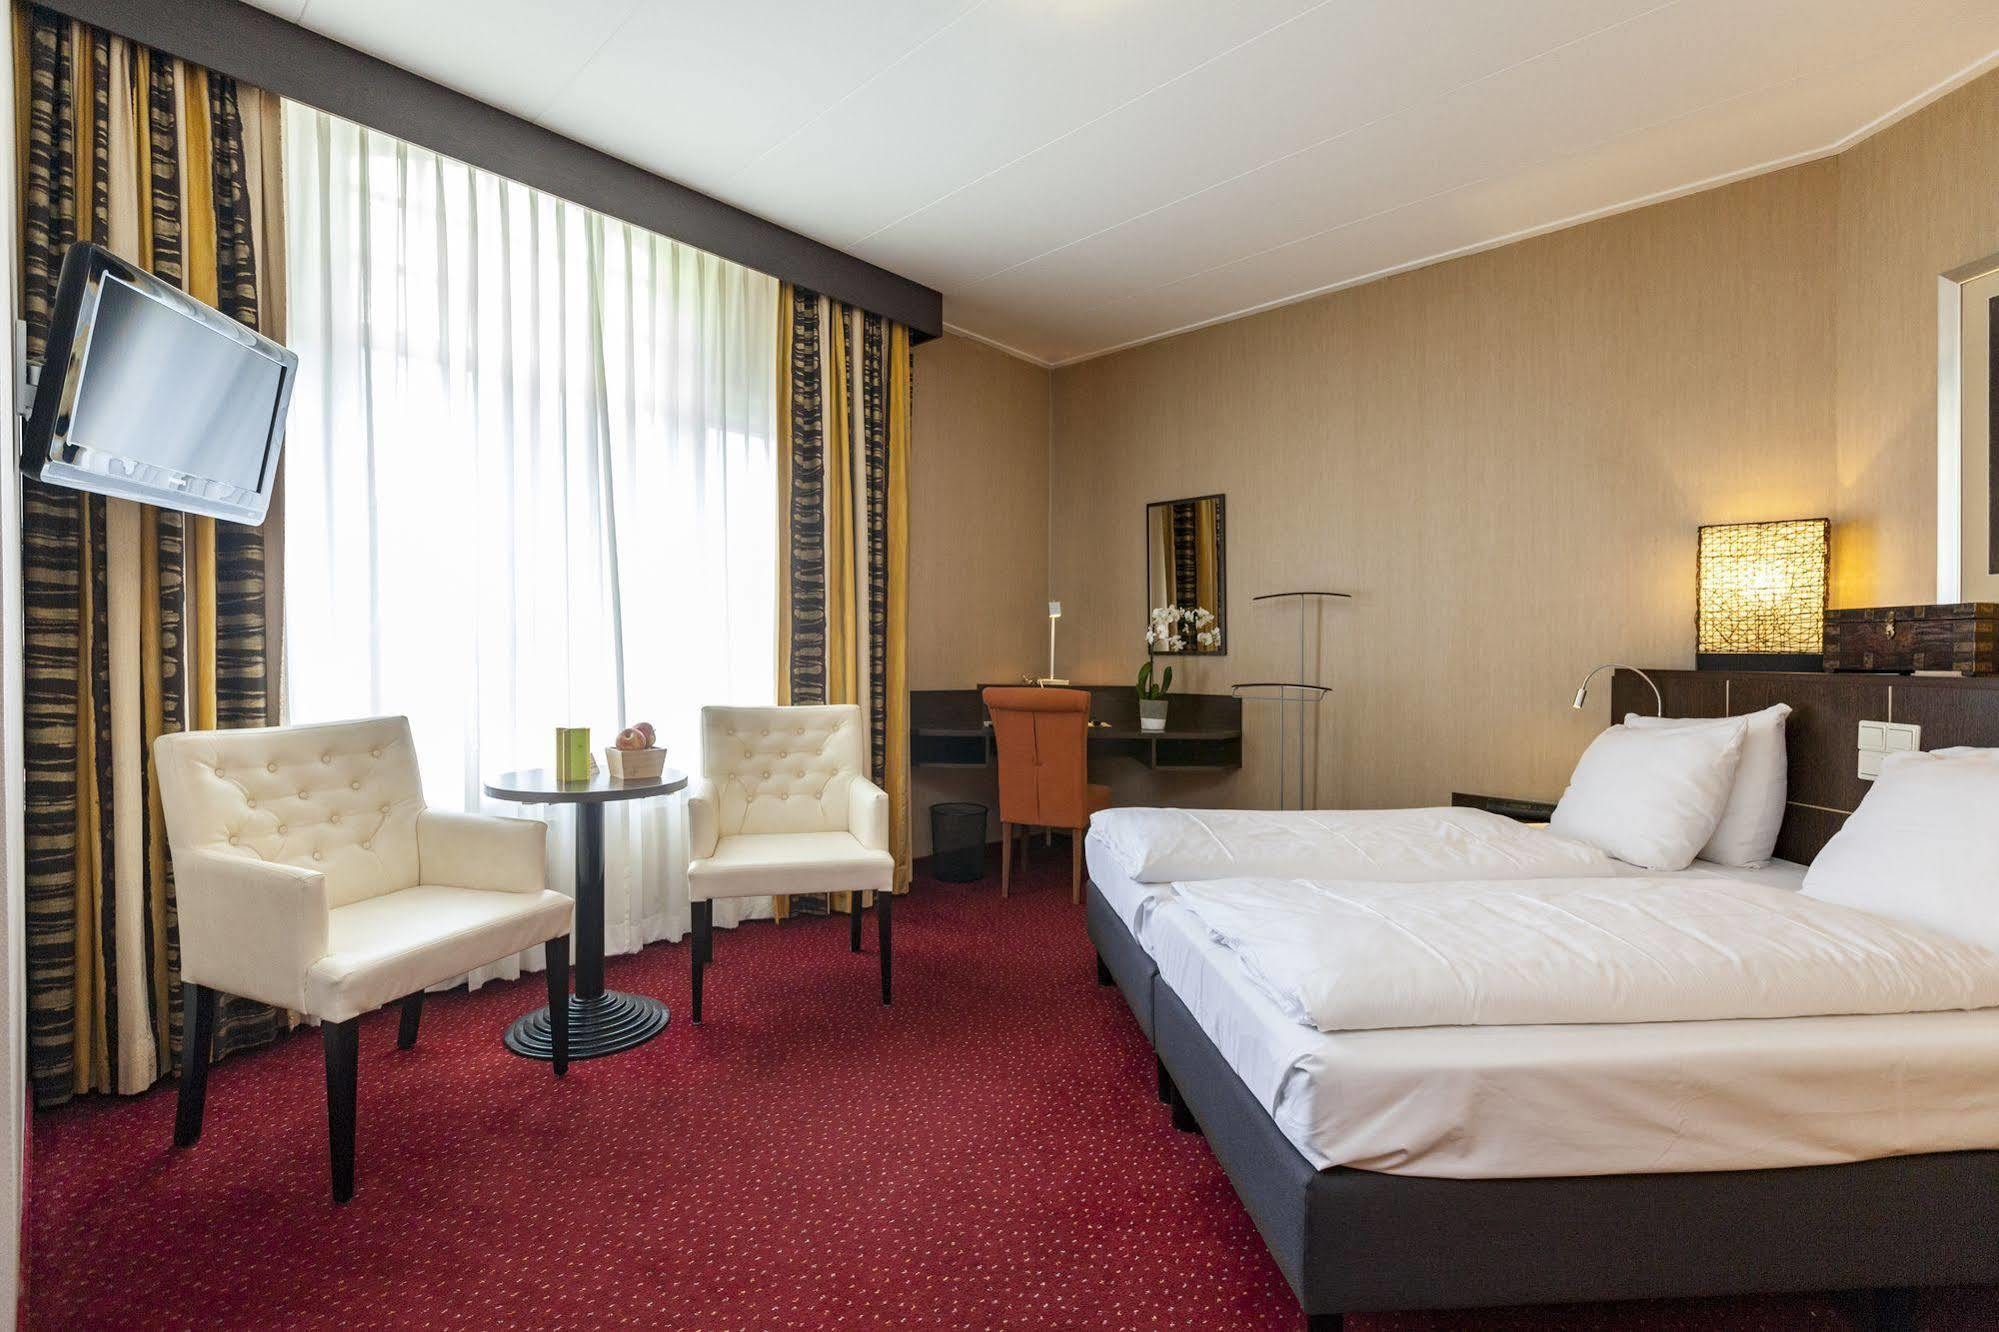 Hotel Ravel Hilversum Luaran gambar